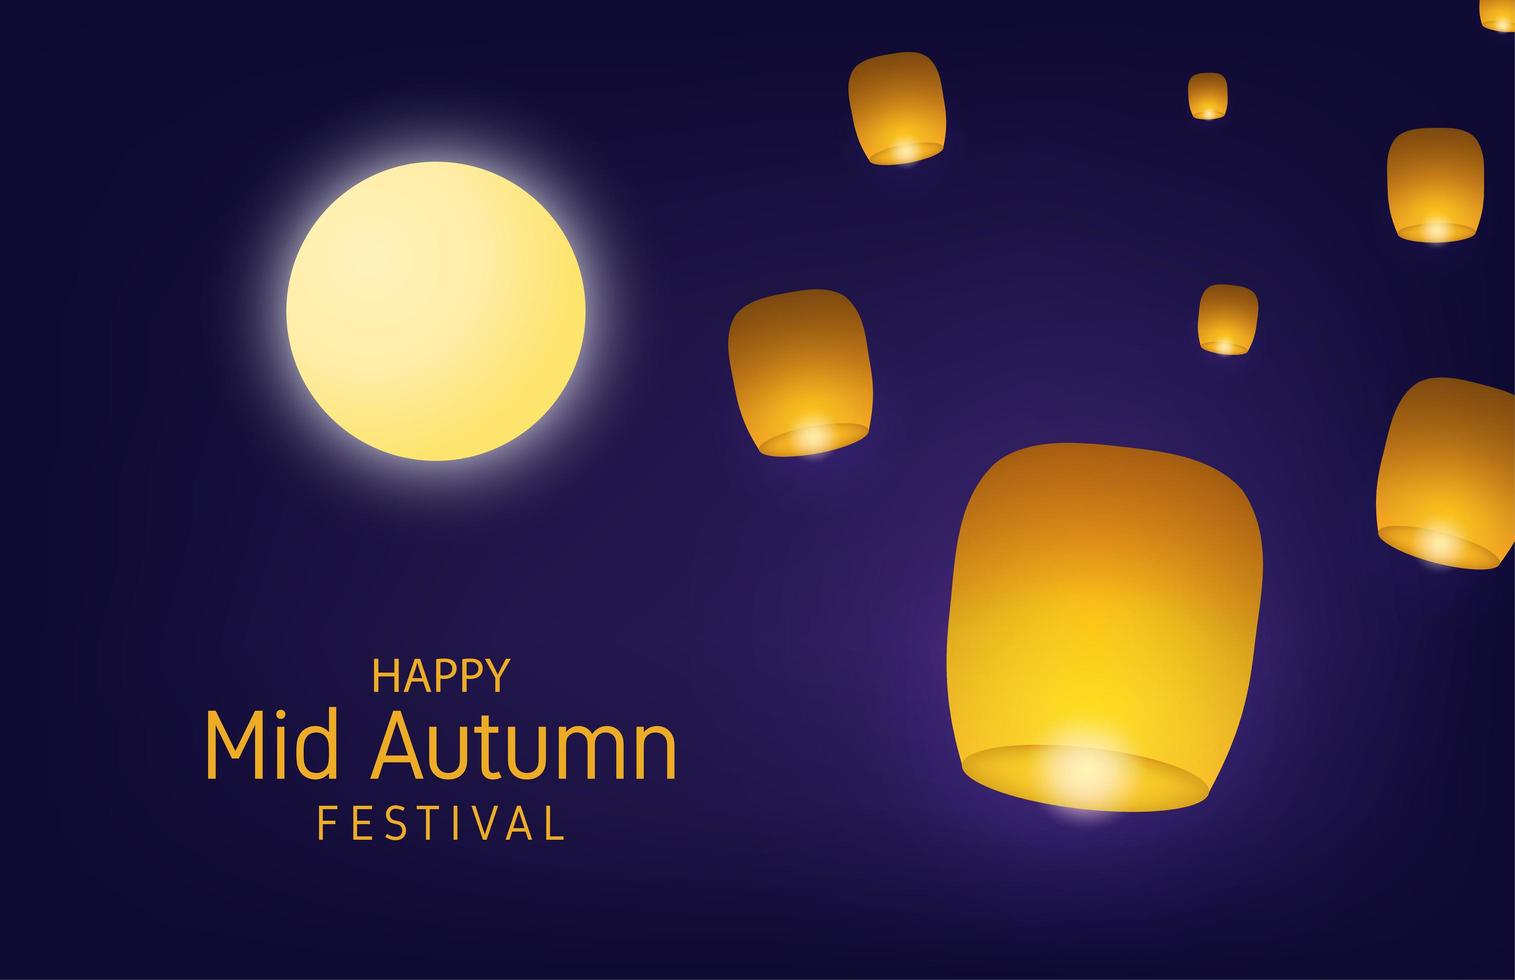 conception de festival de mi-automne avec lune et lanternes allumées vecteur